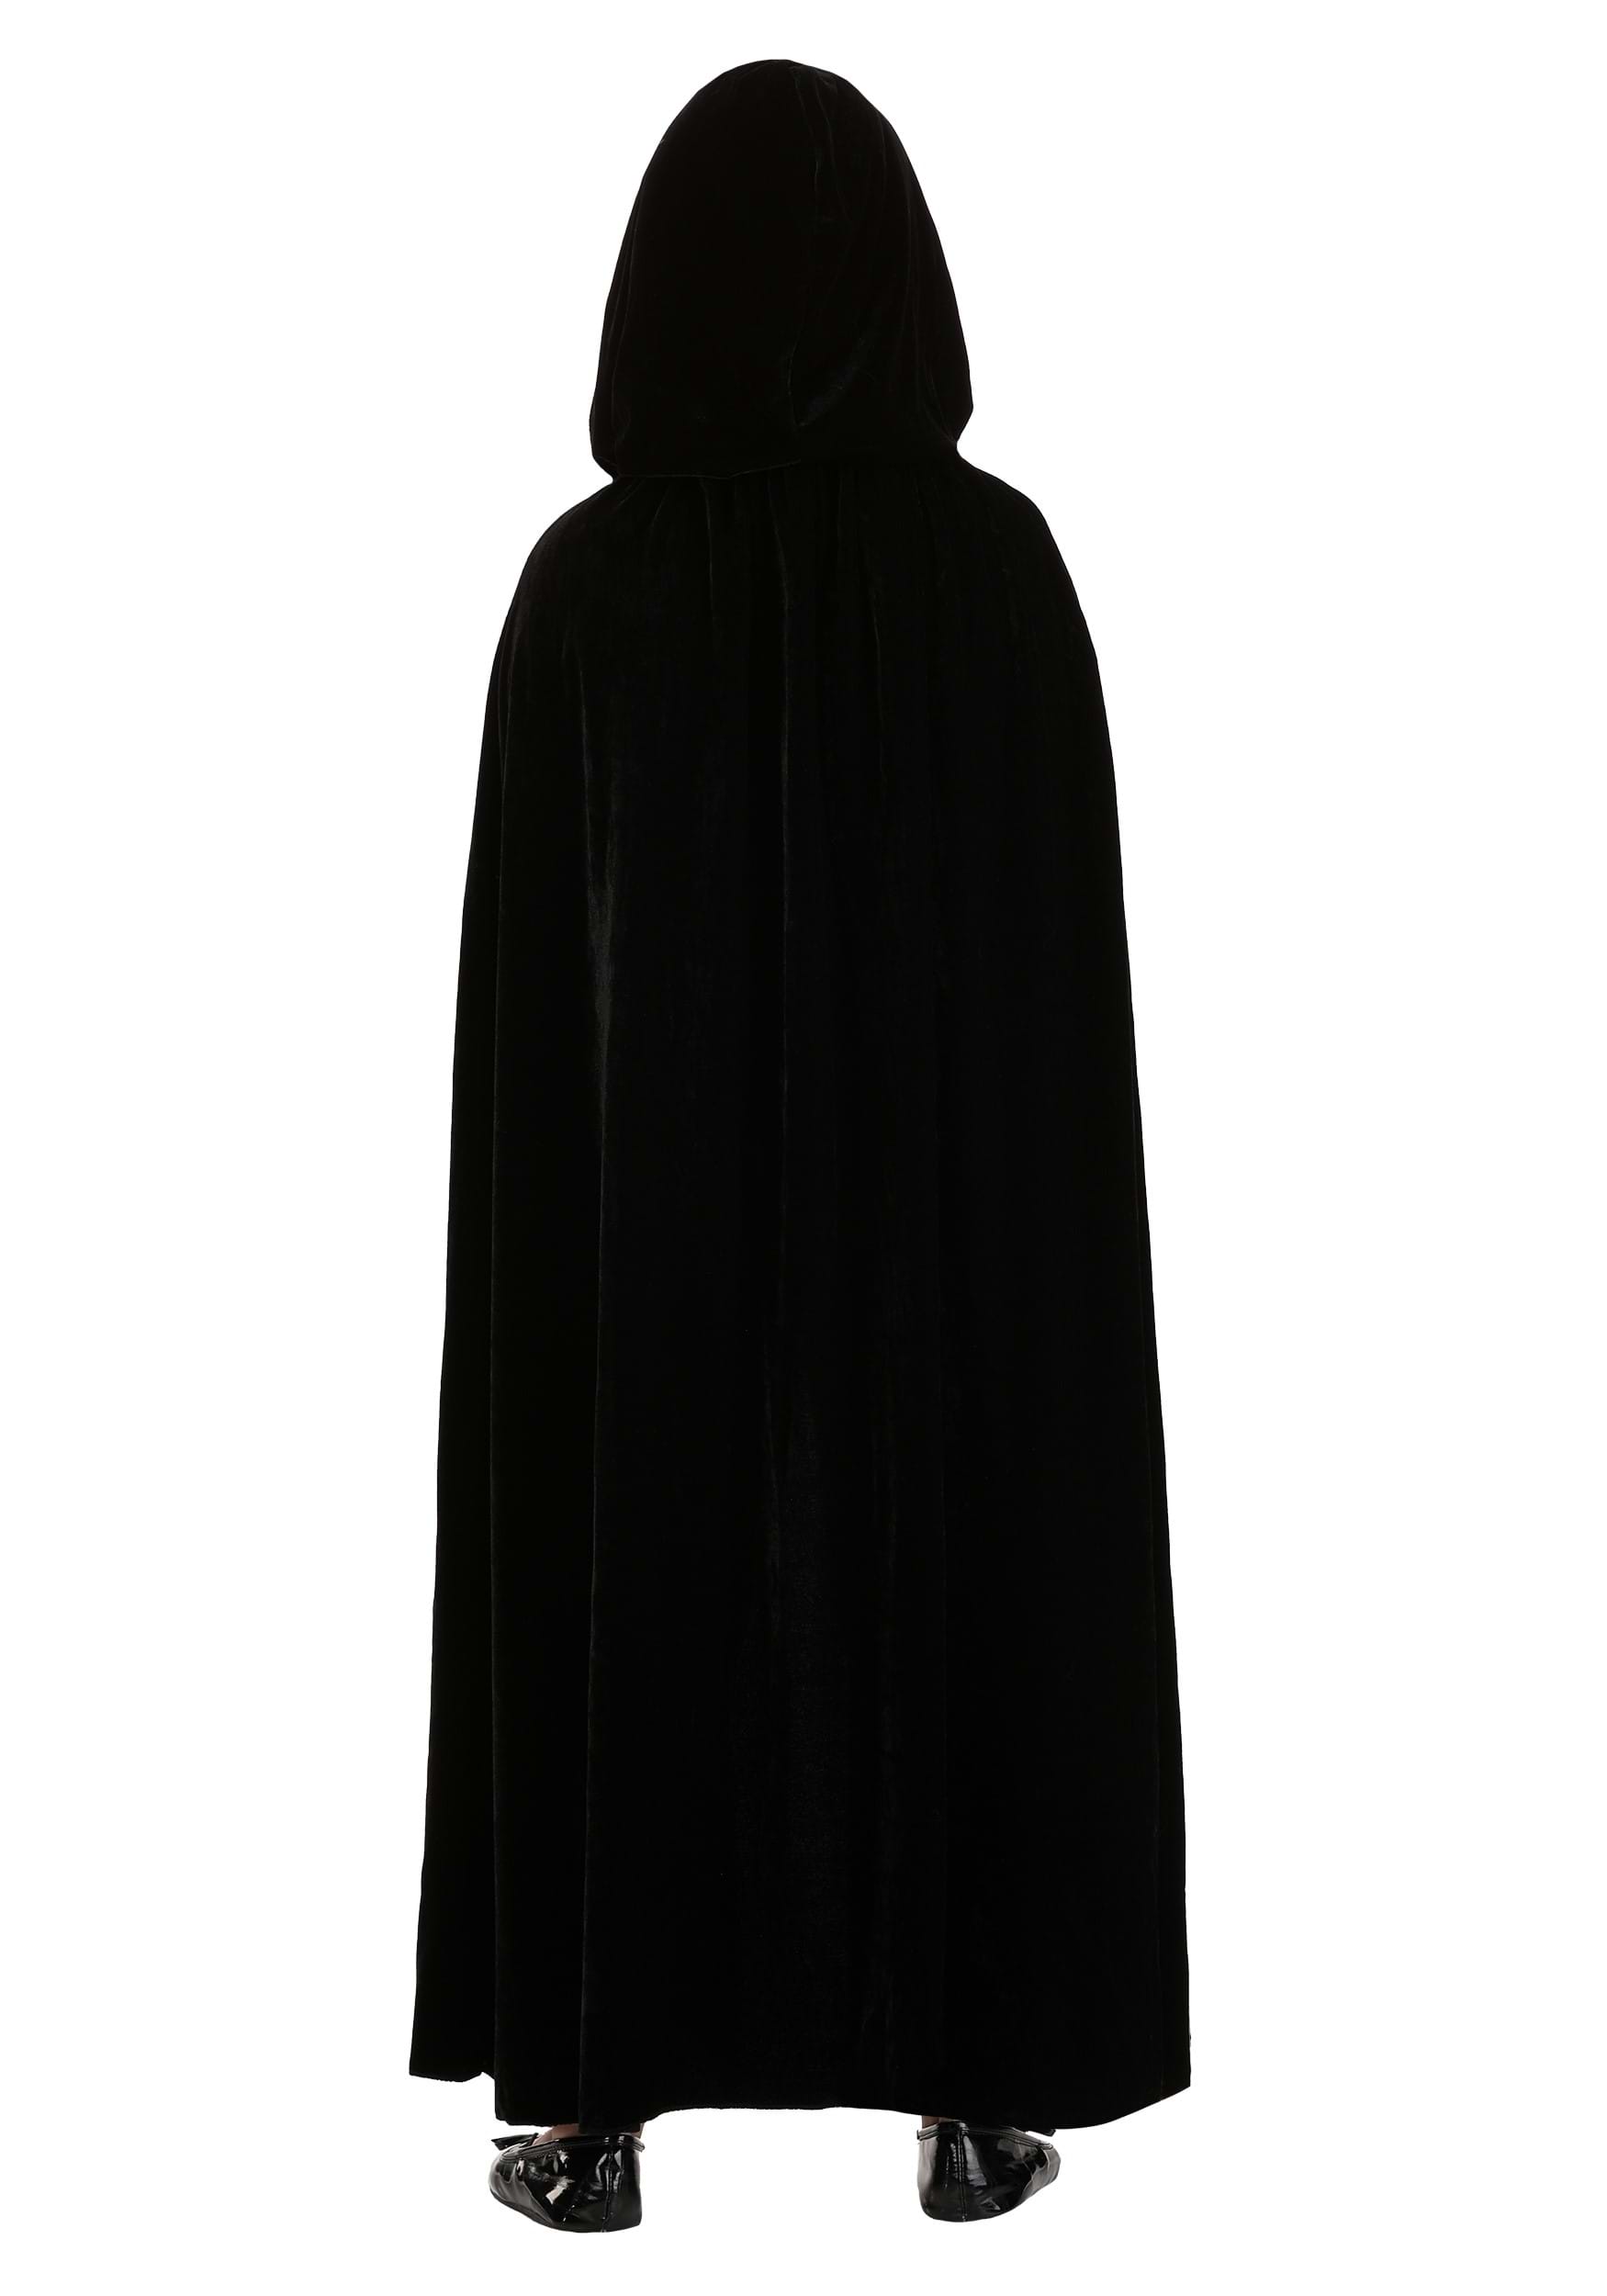 Black Velvet Hooded Kid's Cape , Costume Capes